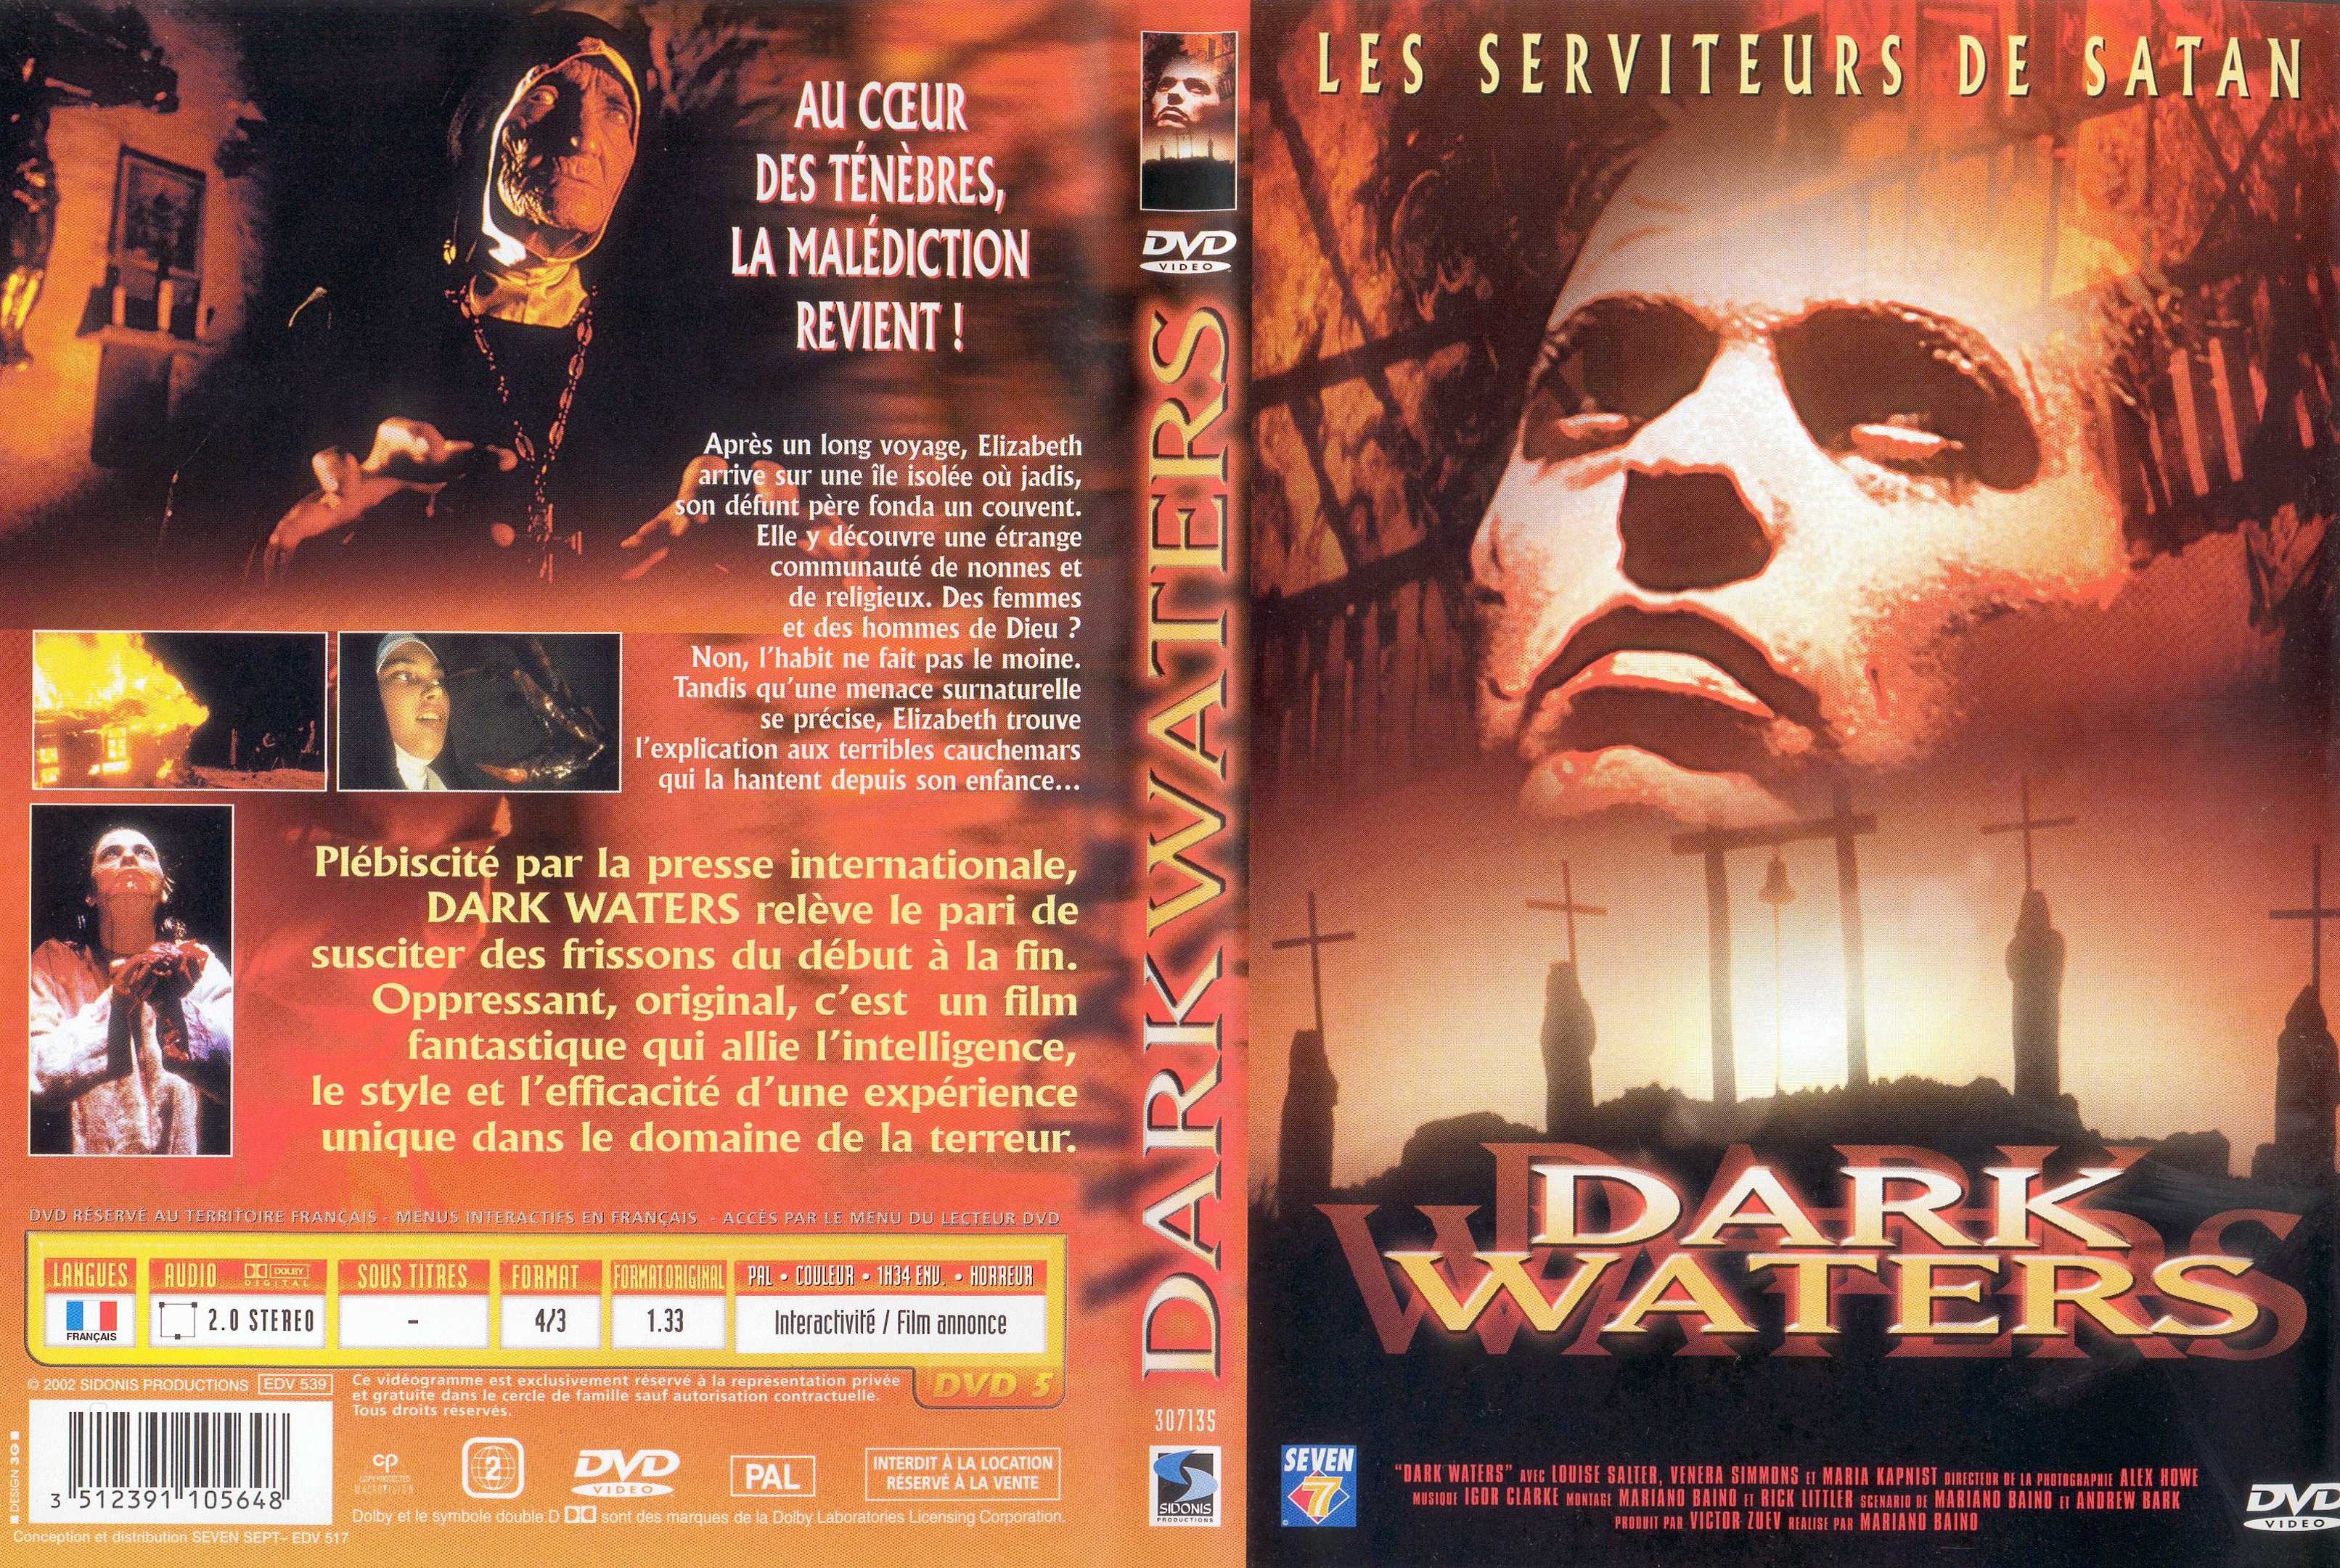 Jaquette DVD Dark waters